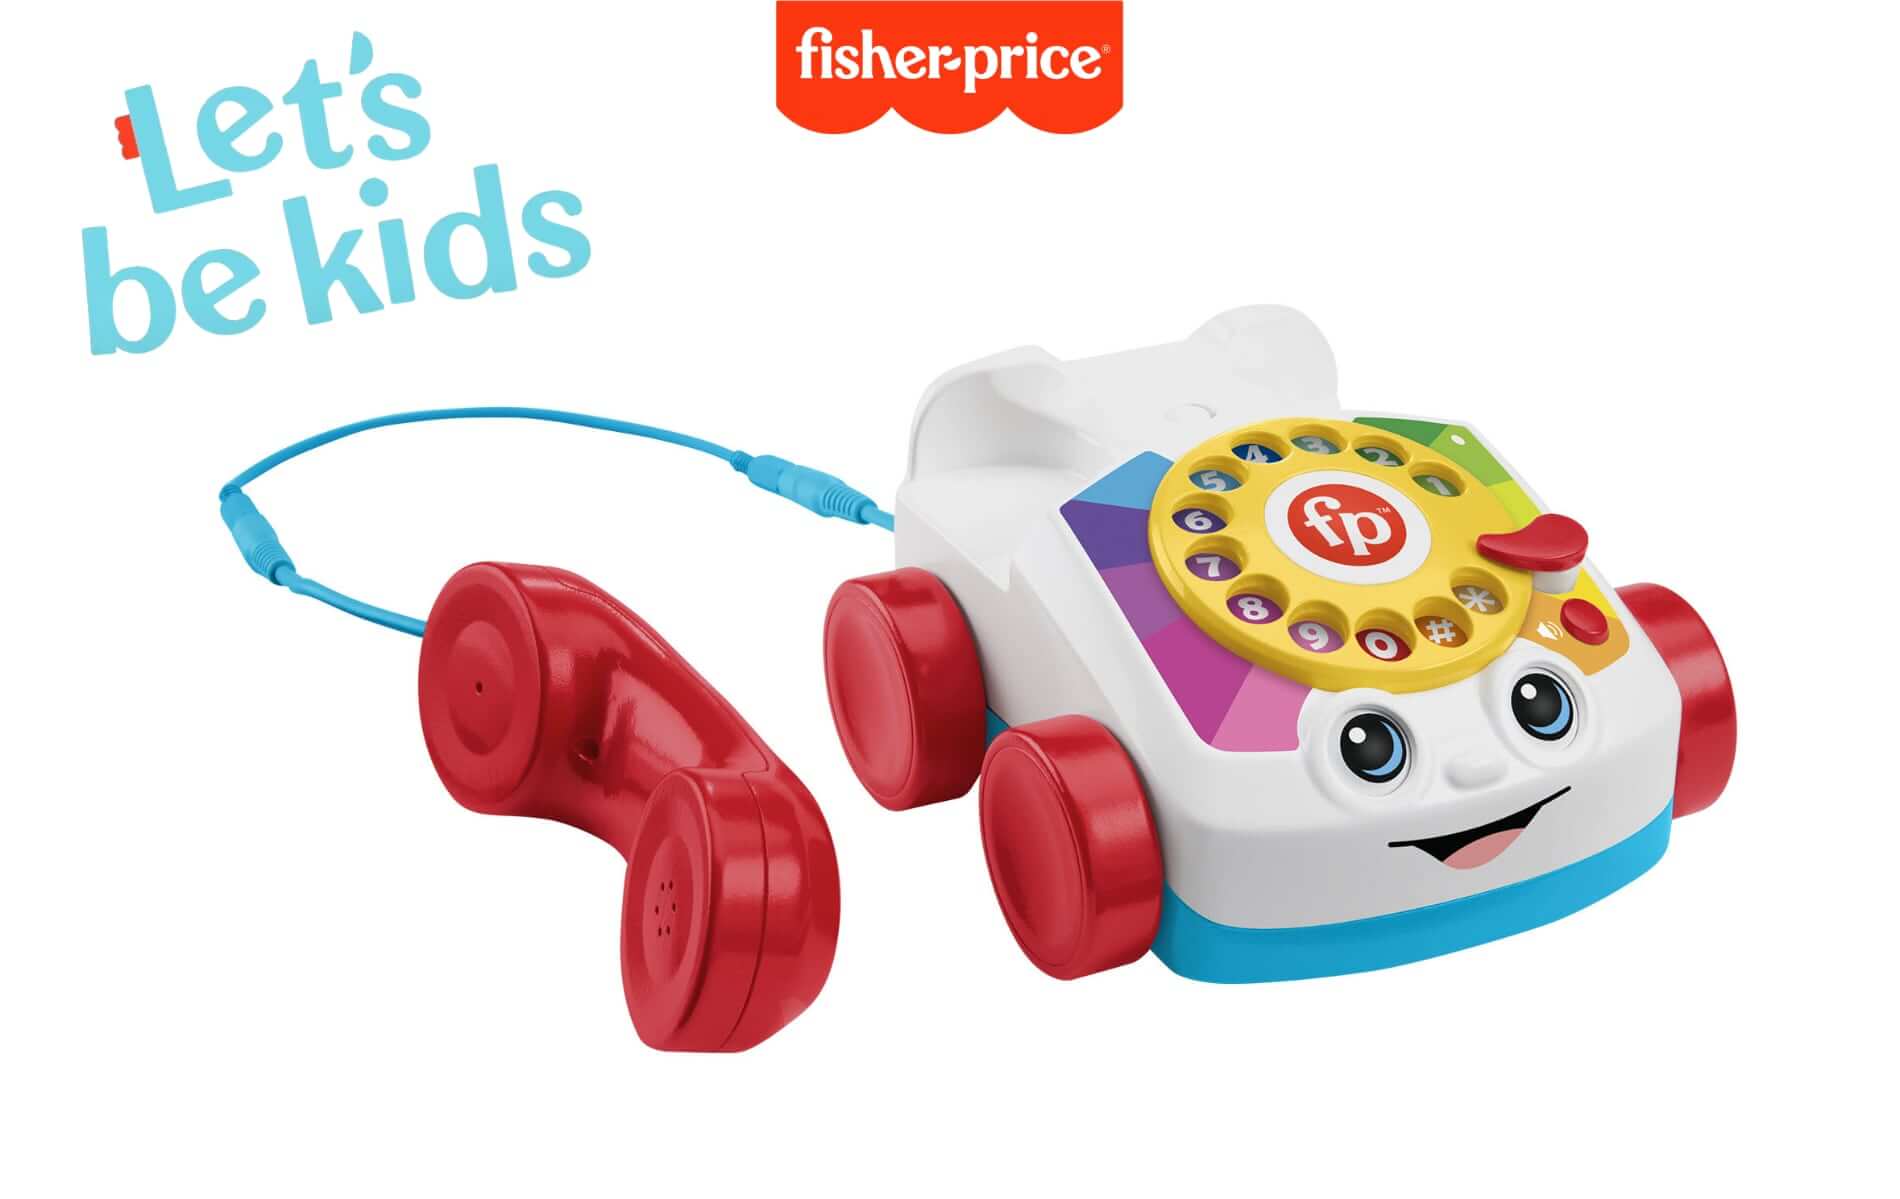 Zabawkowy telefon tarczowy Chatter od Fisher-Price, który wykonuje prawdziwe połączenia telefoniczne